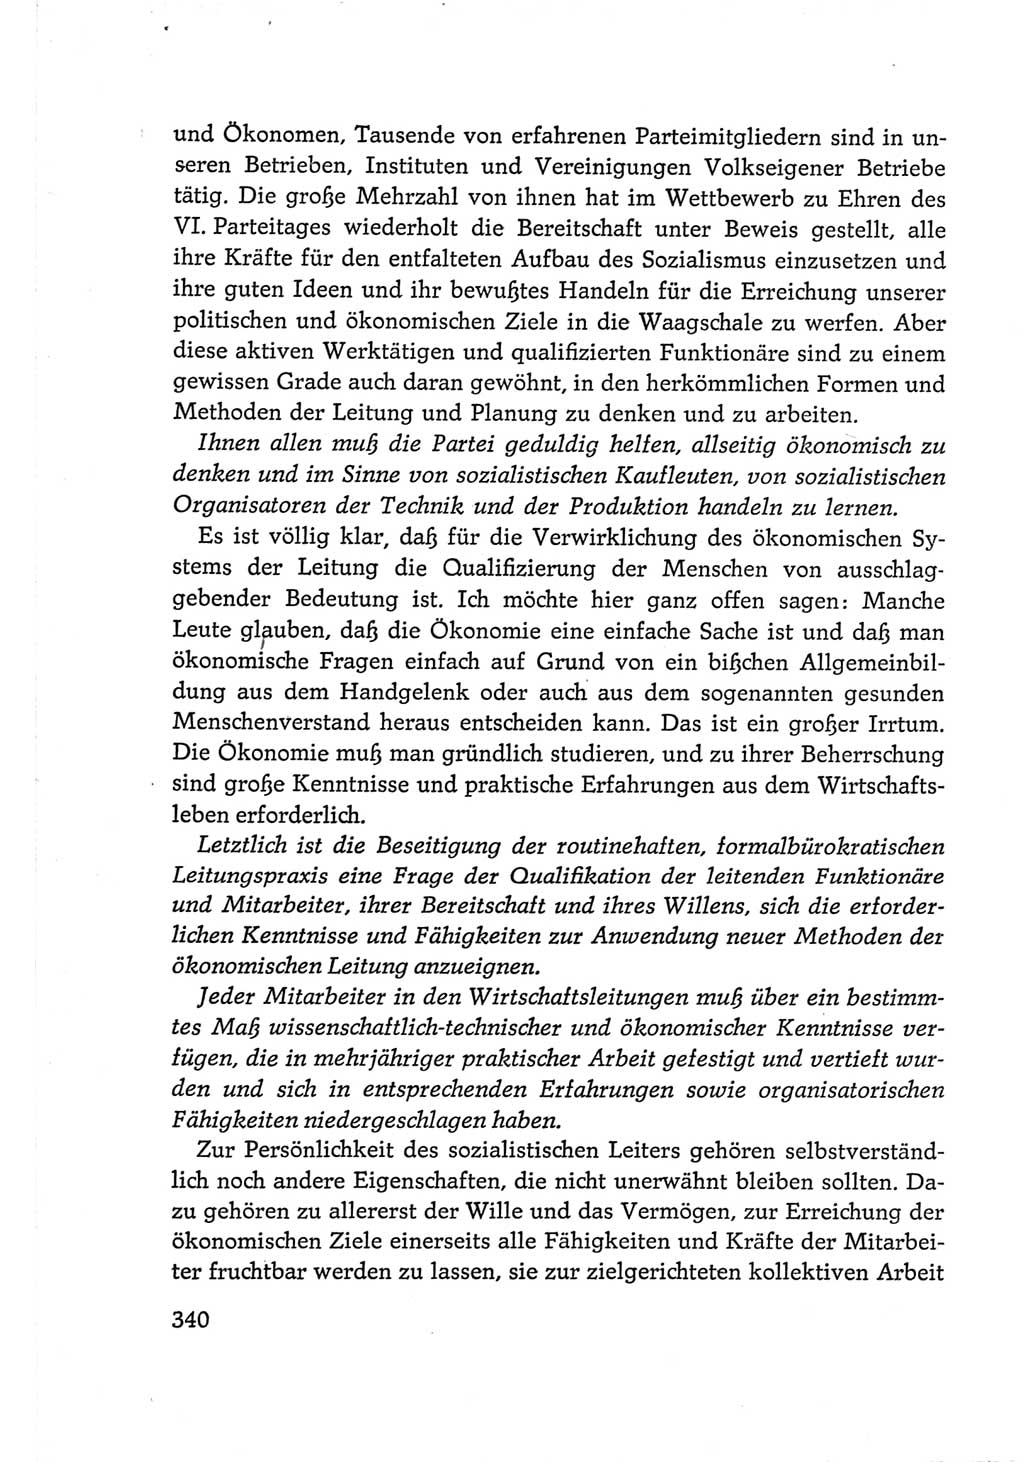 Protokoll der Verhandlungen des Ⅵ. Parteitages der Sozialistischen Einheitspartei Deutschlands (SED) [Deutsche Demokratische Republik (DDR)] 1963, Band Ⅲ, Seite 340 (Prot. Verh. Ⅵ. PT SED DDR 1963, Bd. Ⅲ, S. 340)